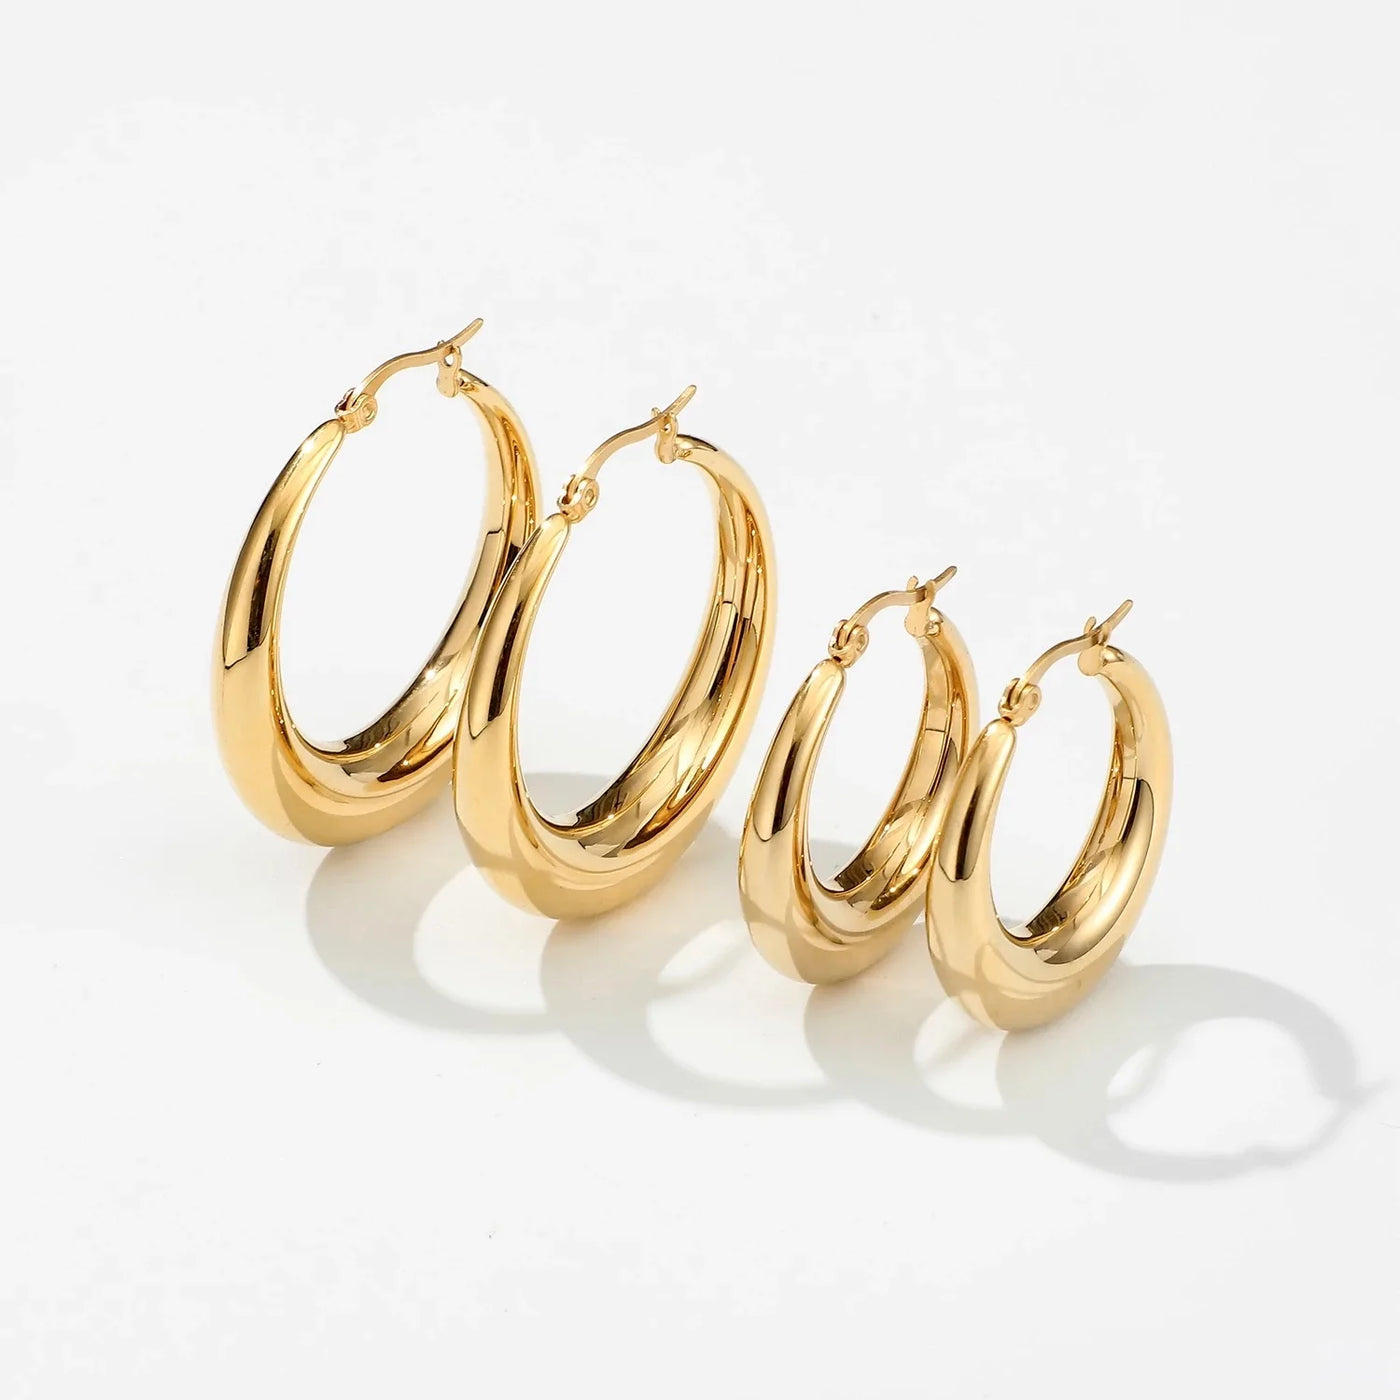 18K Gold-Filled Thick Hollow Hoop Earrings | Large 40mm & 28mm Hoop Earrings